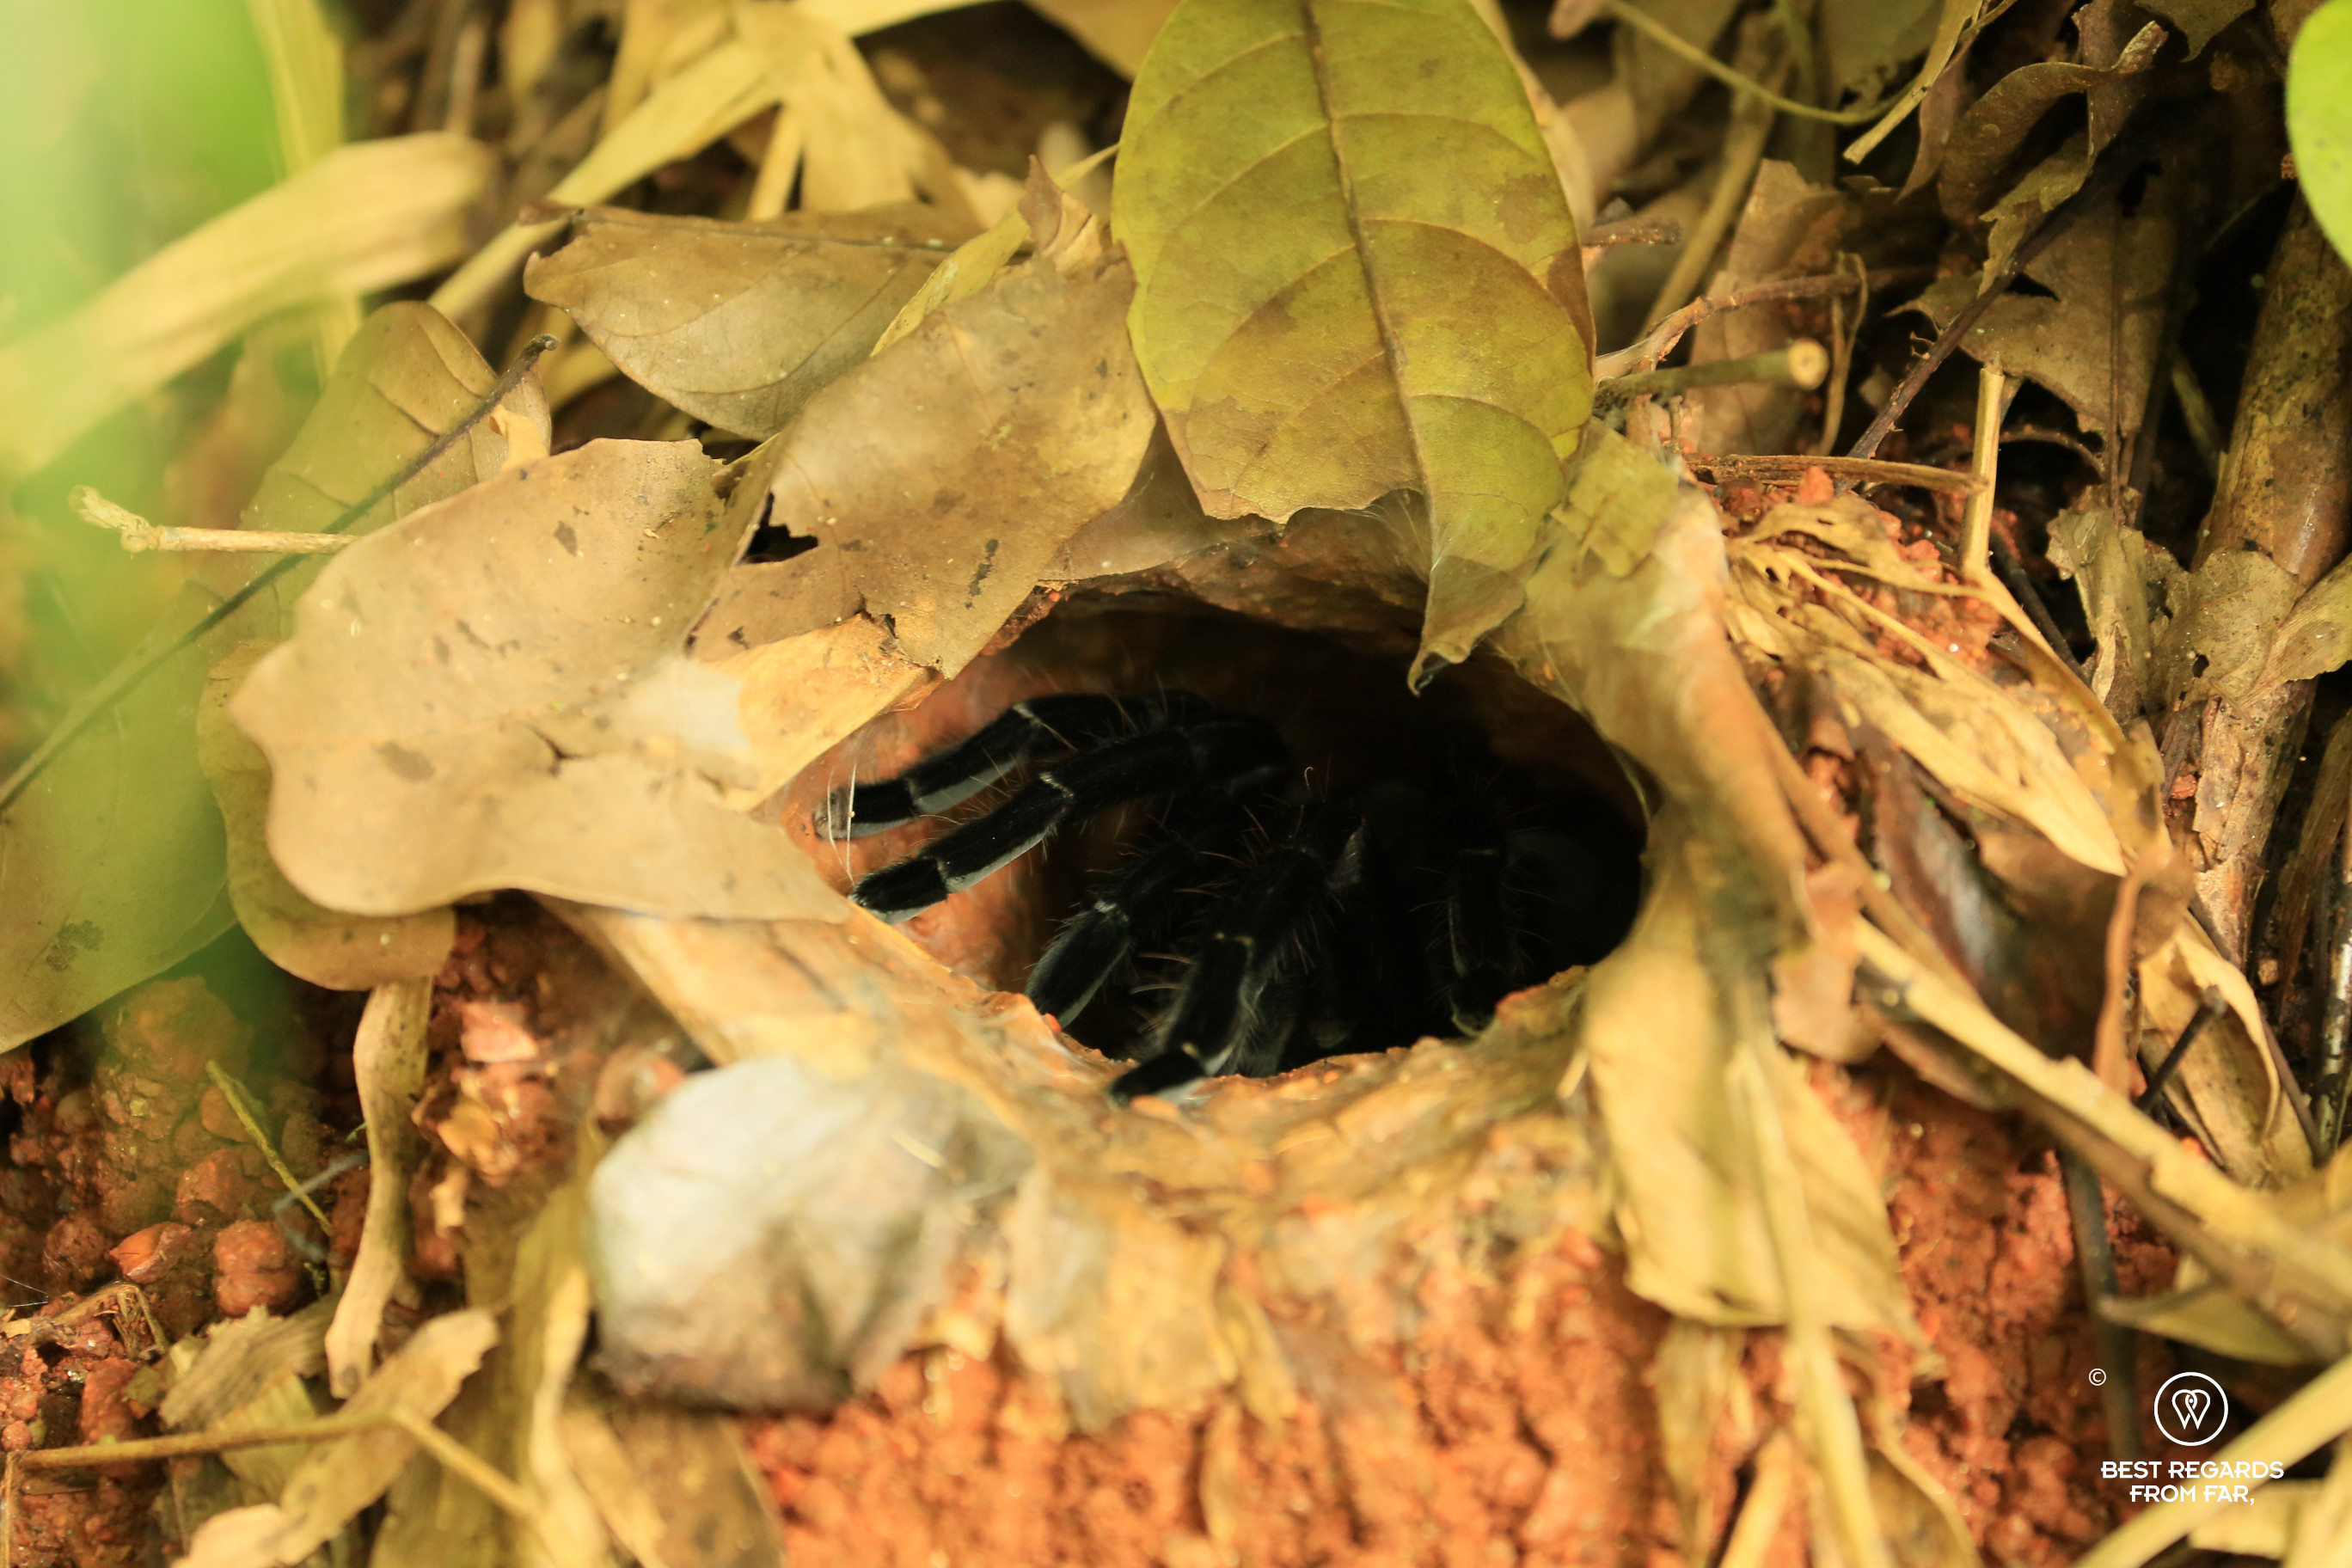 Tarantula burrow